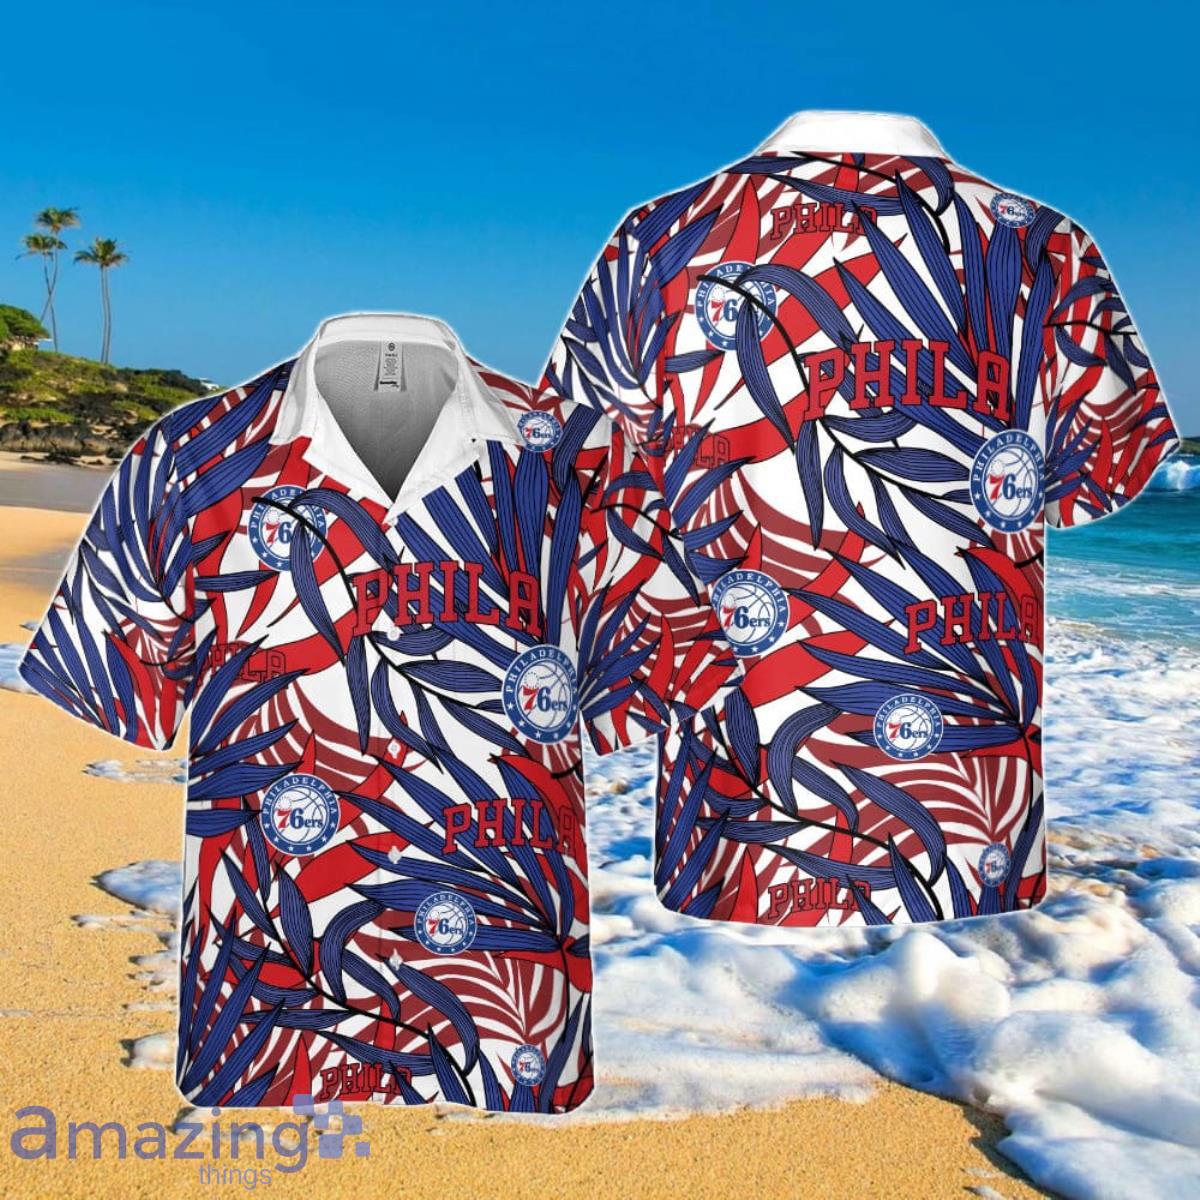 76ers hawaiian shirt